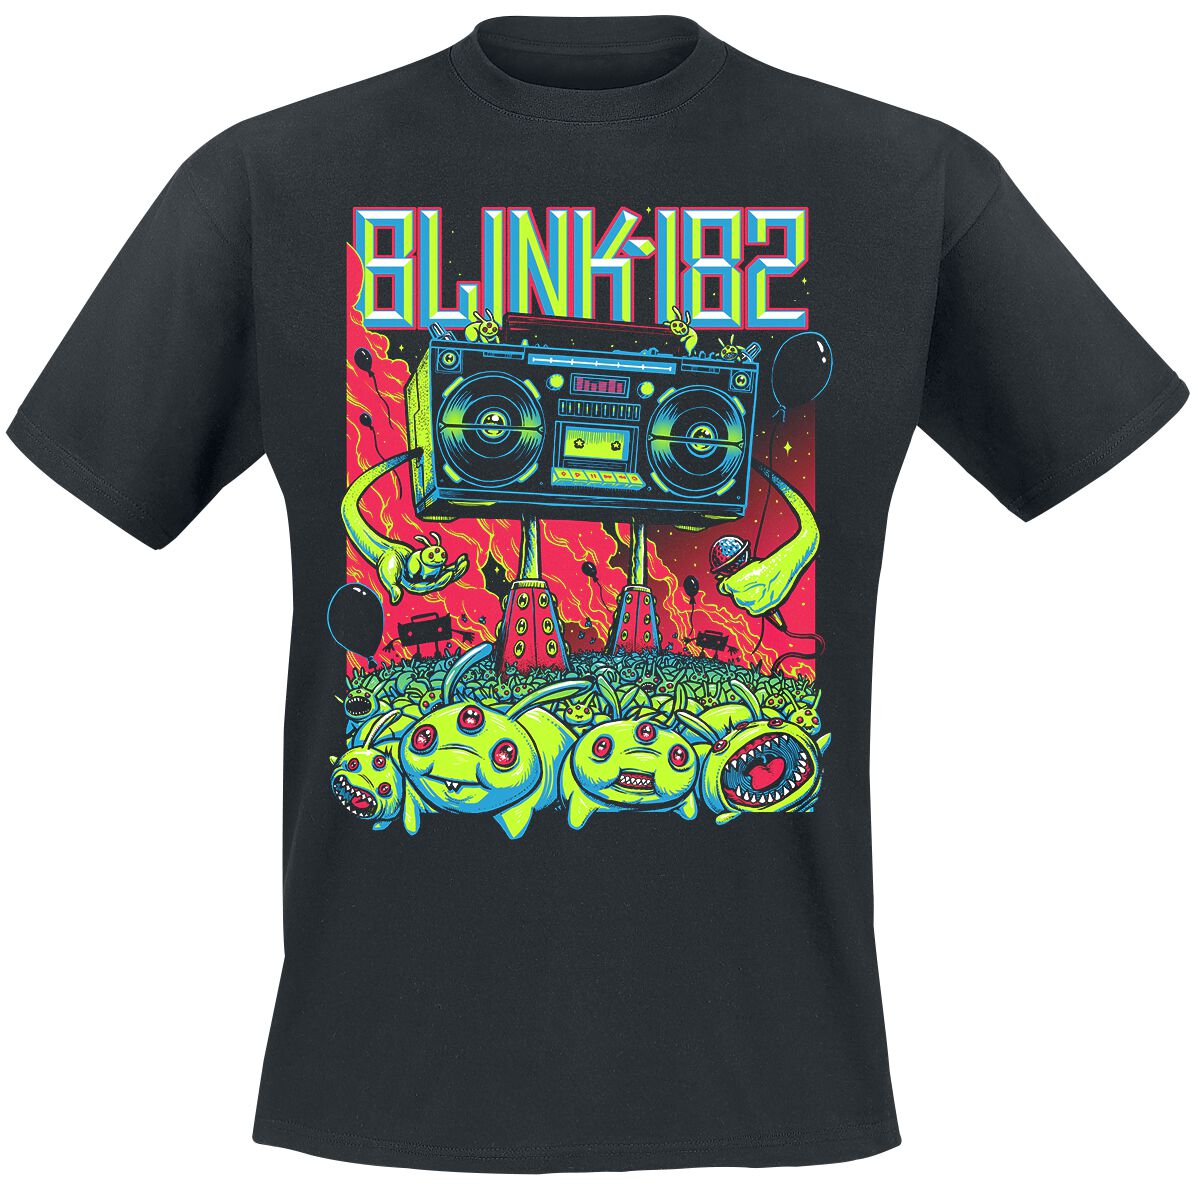 Blink-182 T-Shirt - Superboom - S bis 3XL - für Männer - Größe M - schwarz  - Lizenziertes Merchandise!